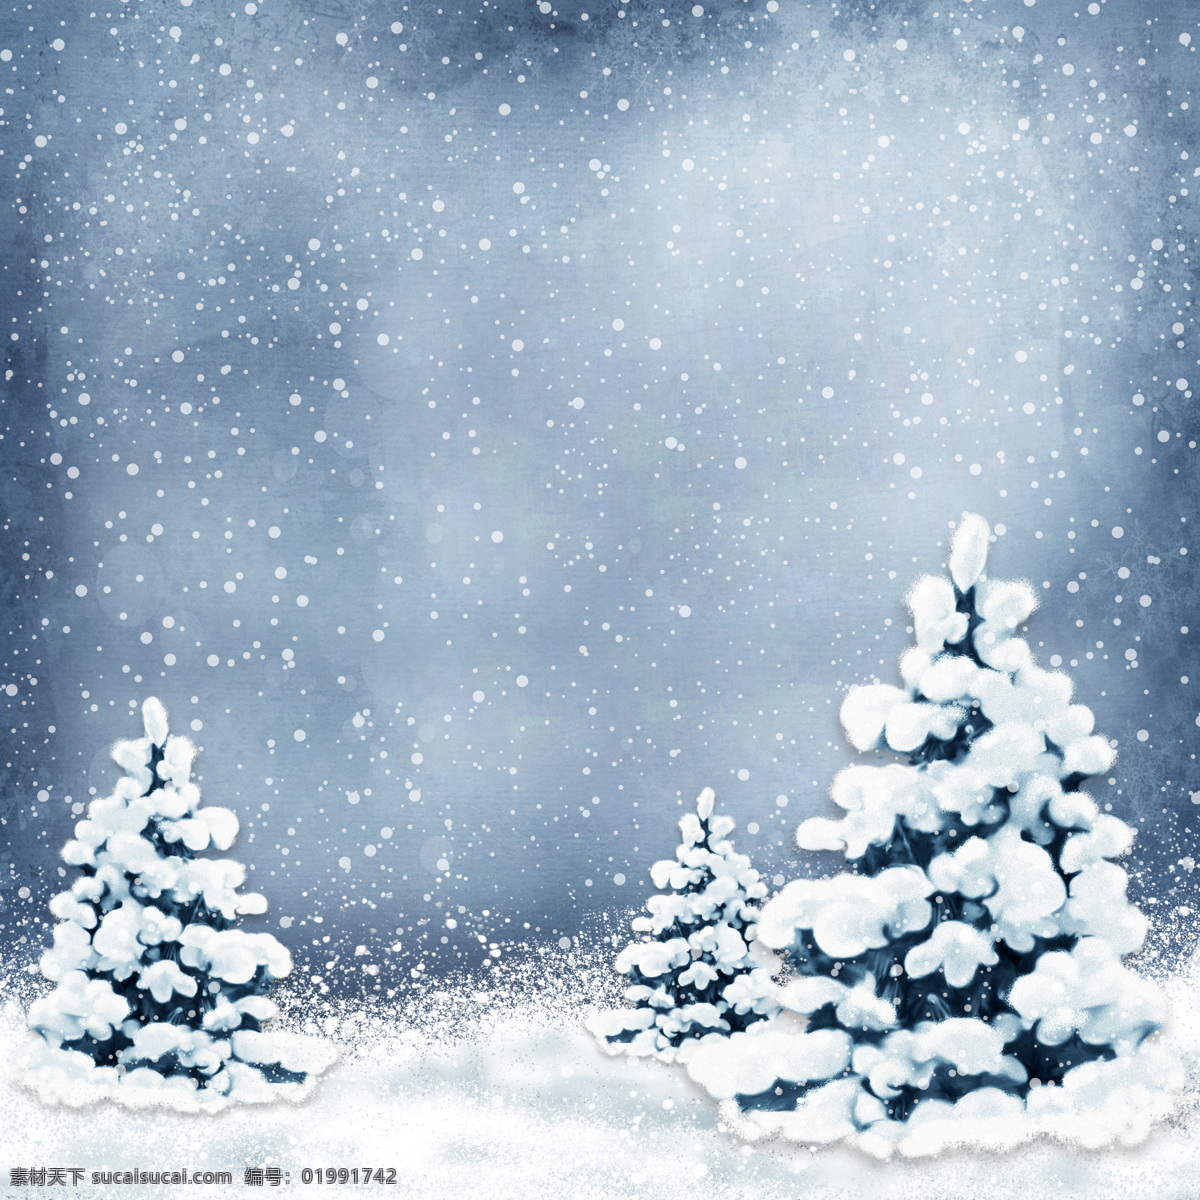 雪地 上 美丽 圣诞树 美丽的圣诞树 树木 雪花 节日庆典 生活百科